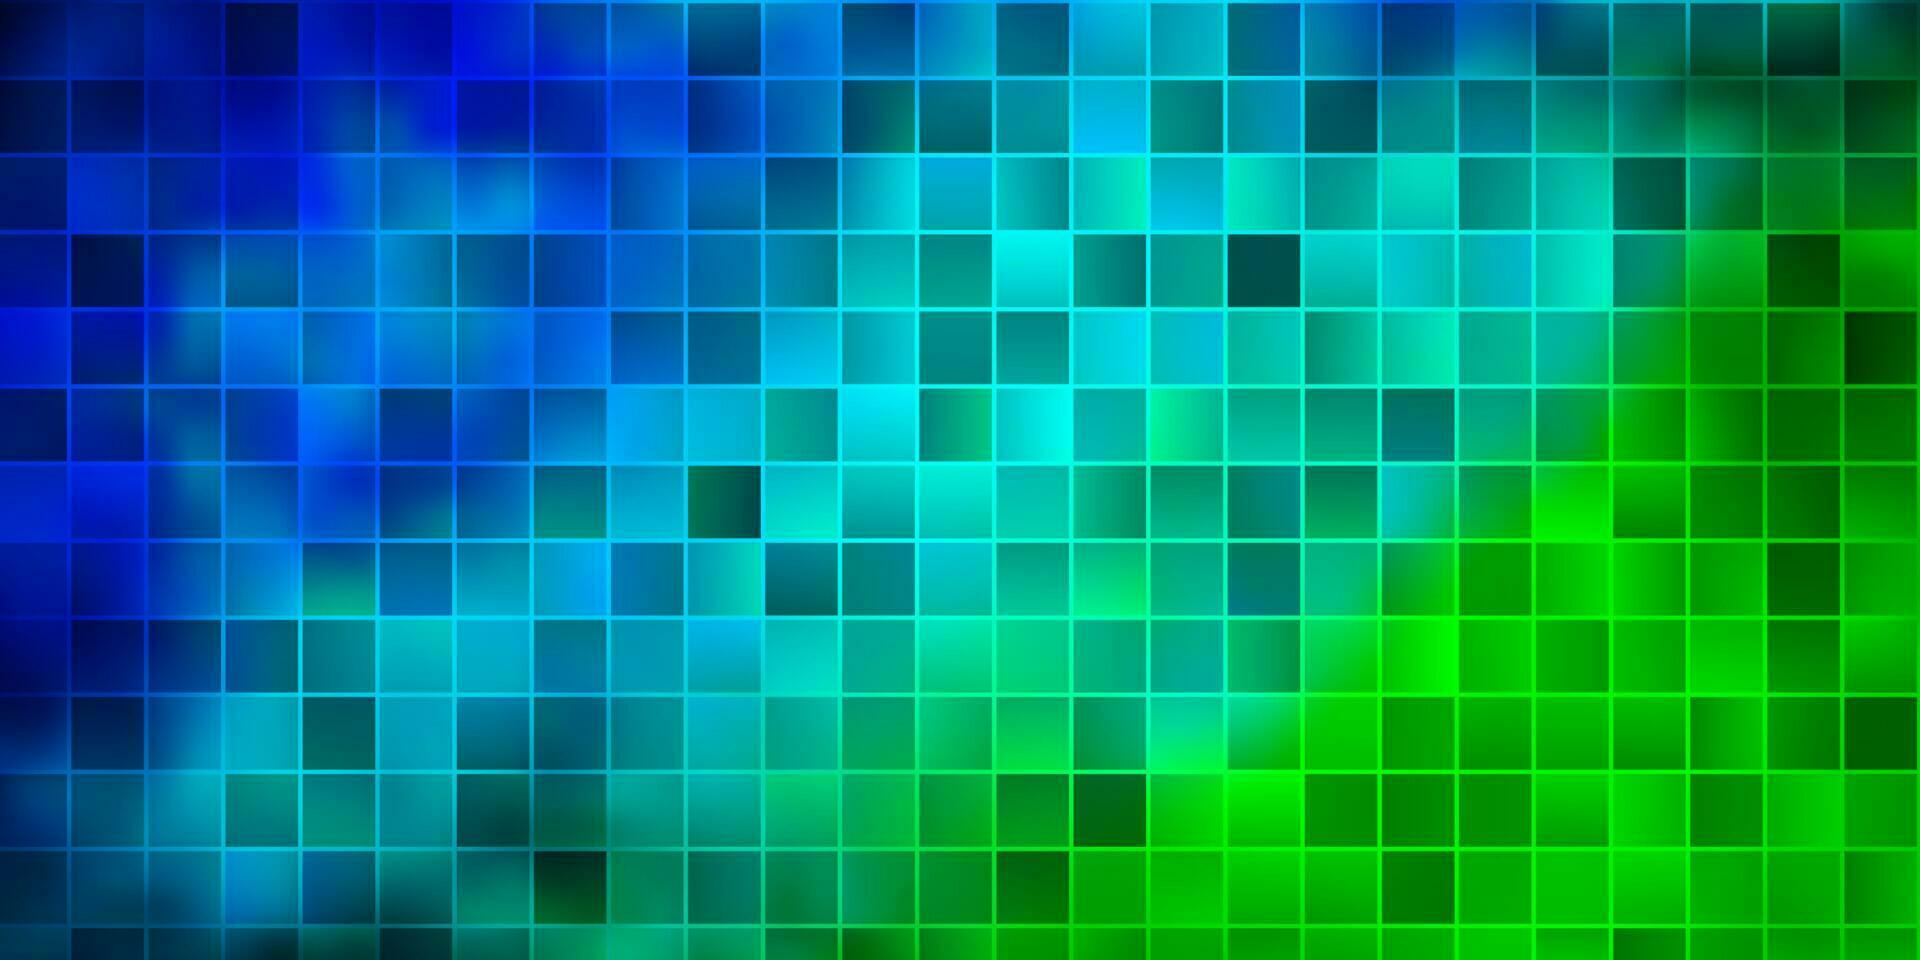 hellblauer, grüner Vektorhintergrund mit Rechtecken. vektor